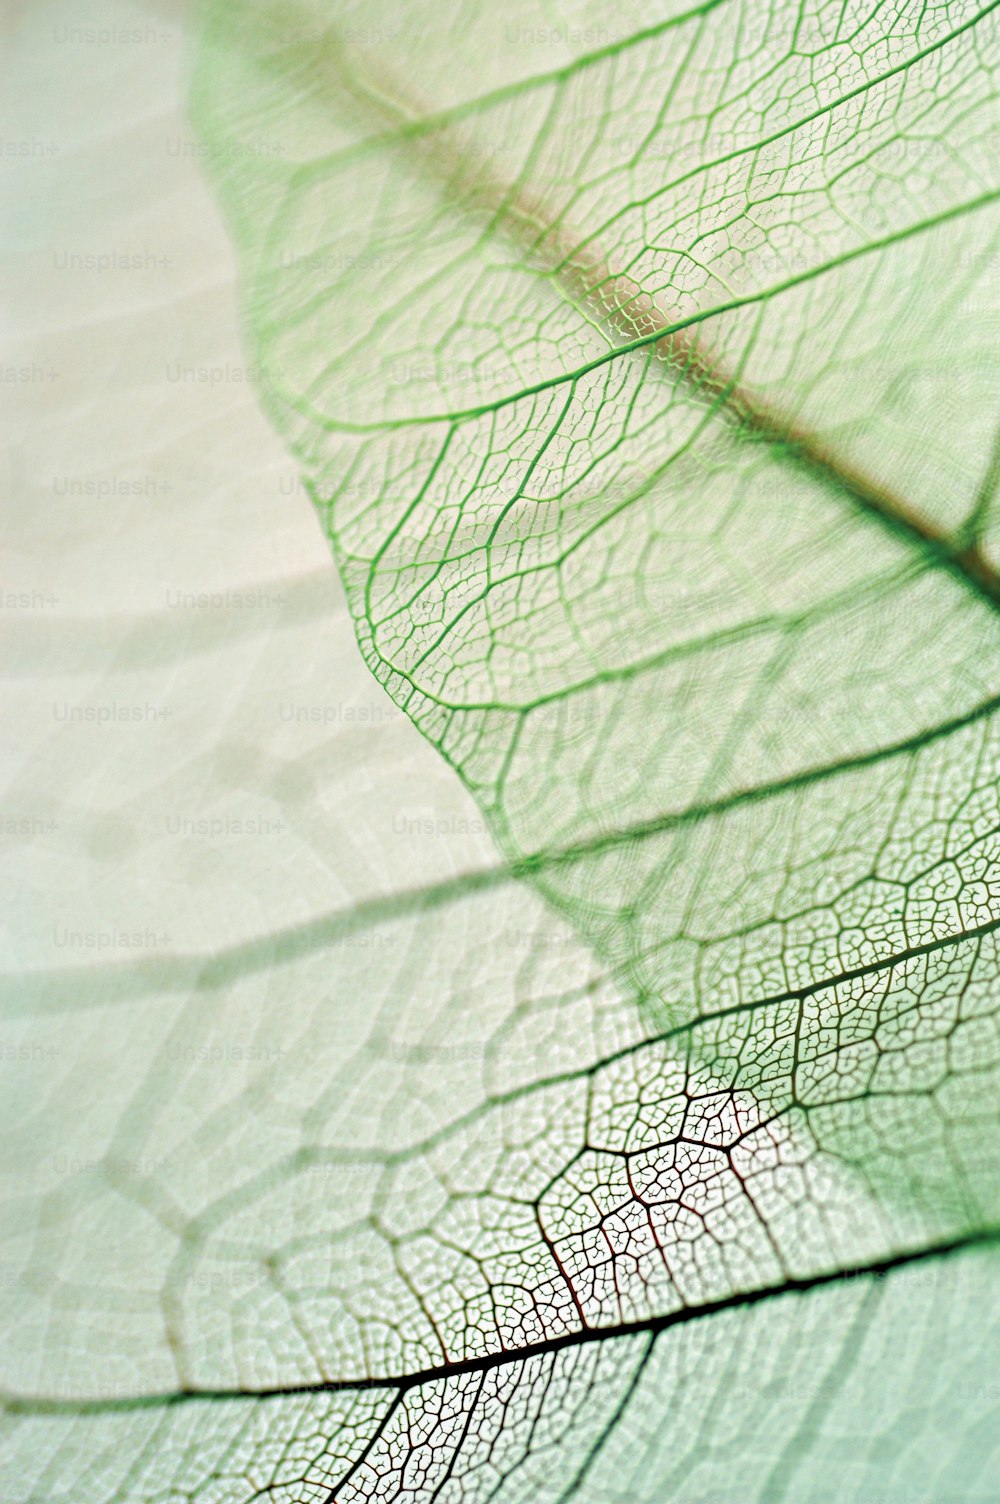 uma visão de perto da veia de uma folha